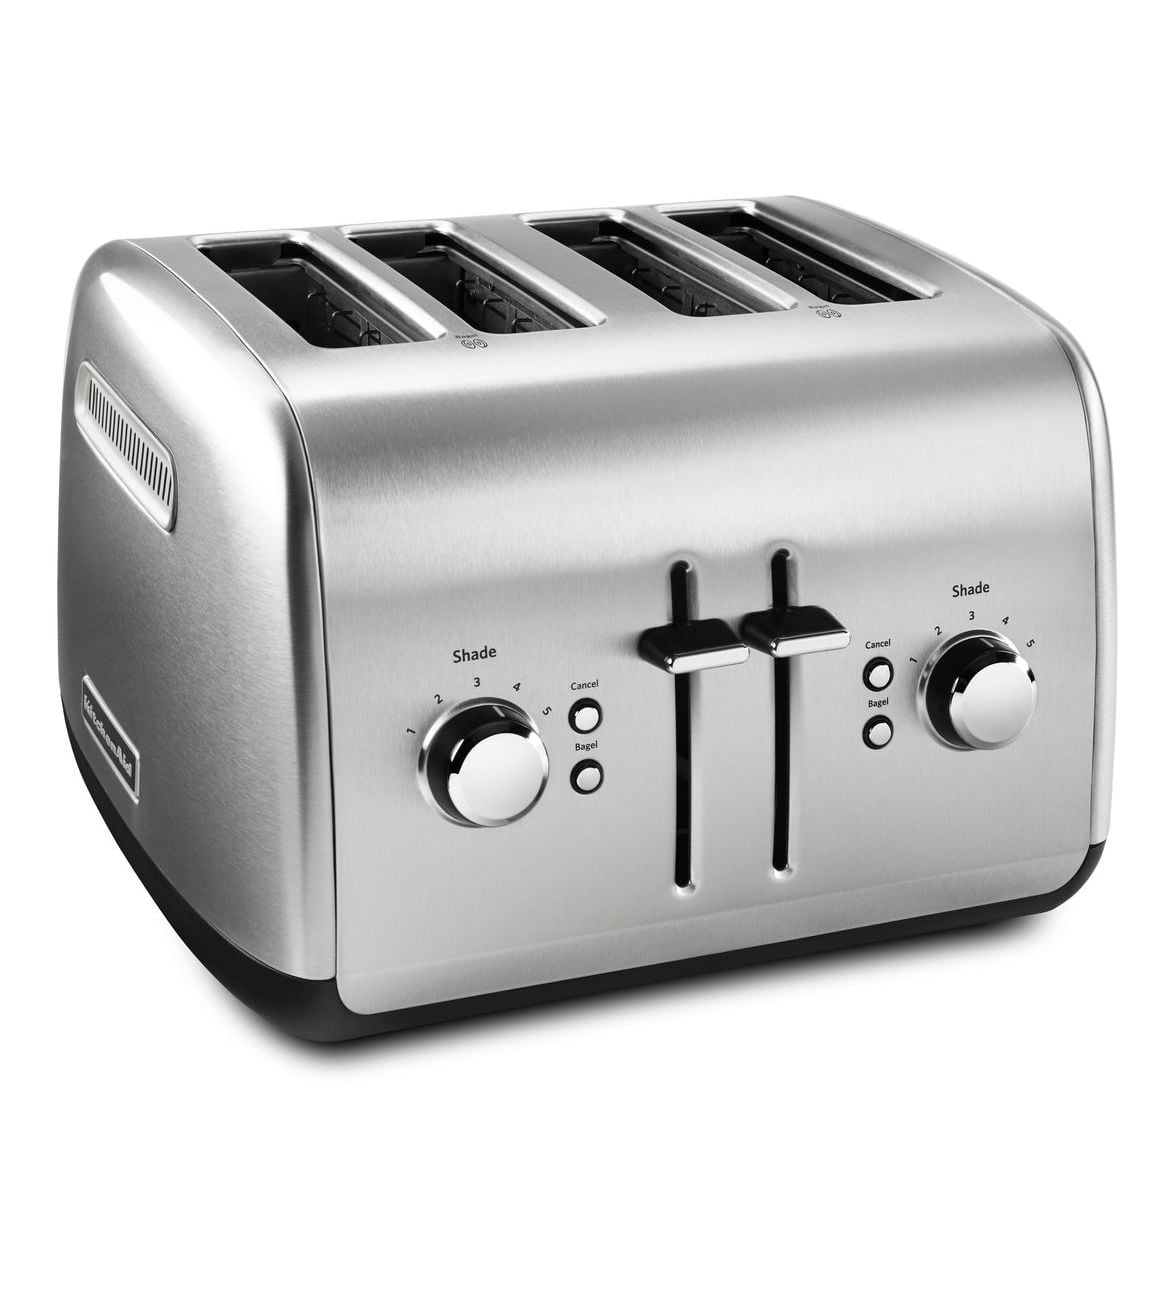 Blæse springe Bot KitchenAid 4-Slice Toaster with Manual High-Lift Lever - KMT4115 -  Walmart.com